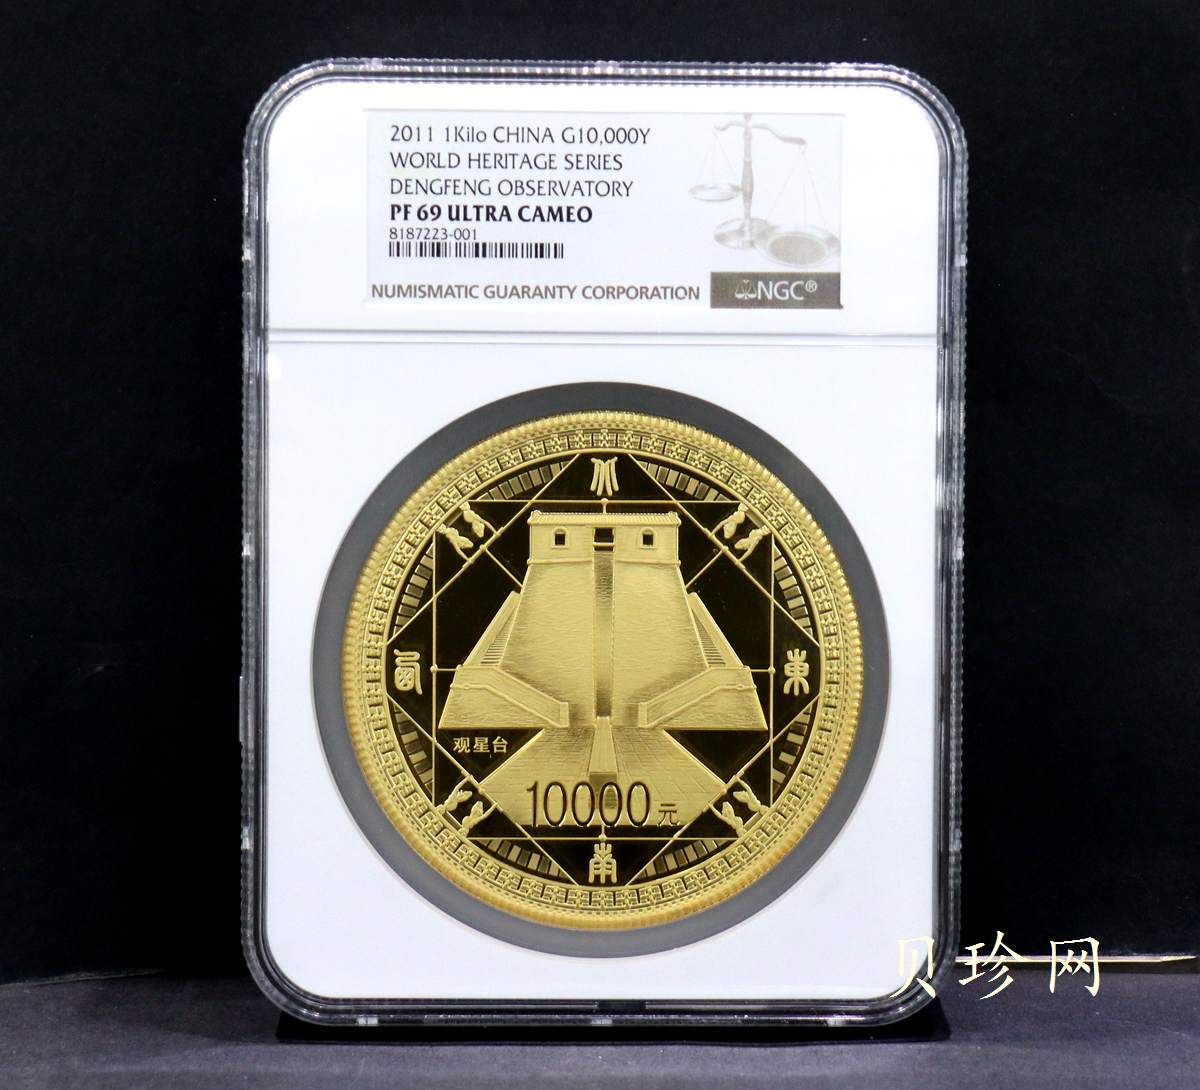 【110901】2011年世界遗产-登封观星台1公斤精制金币